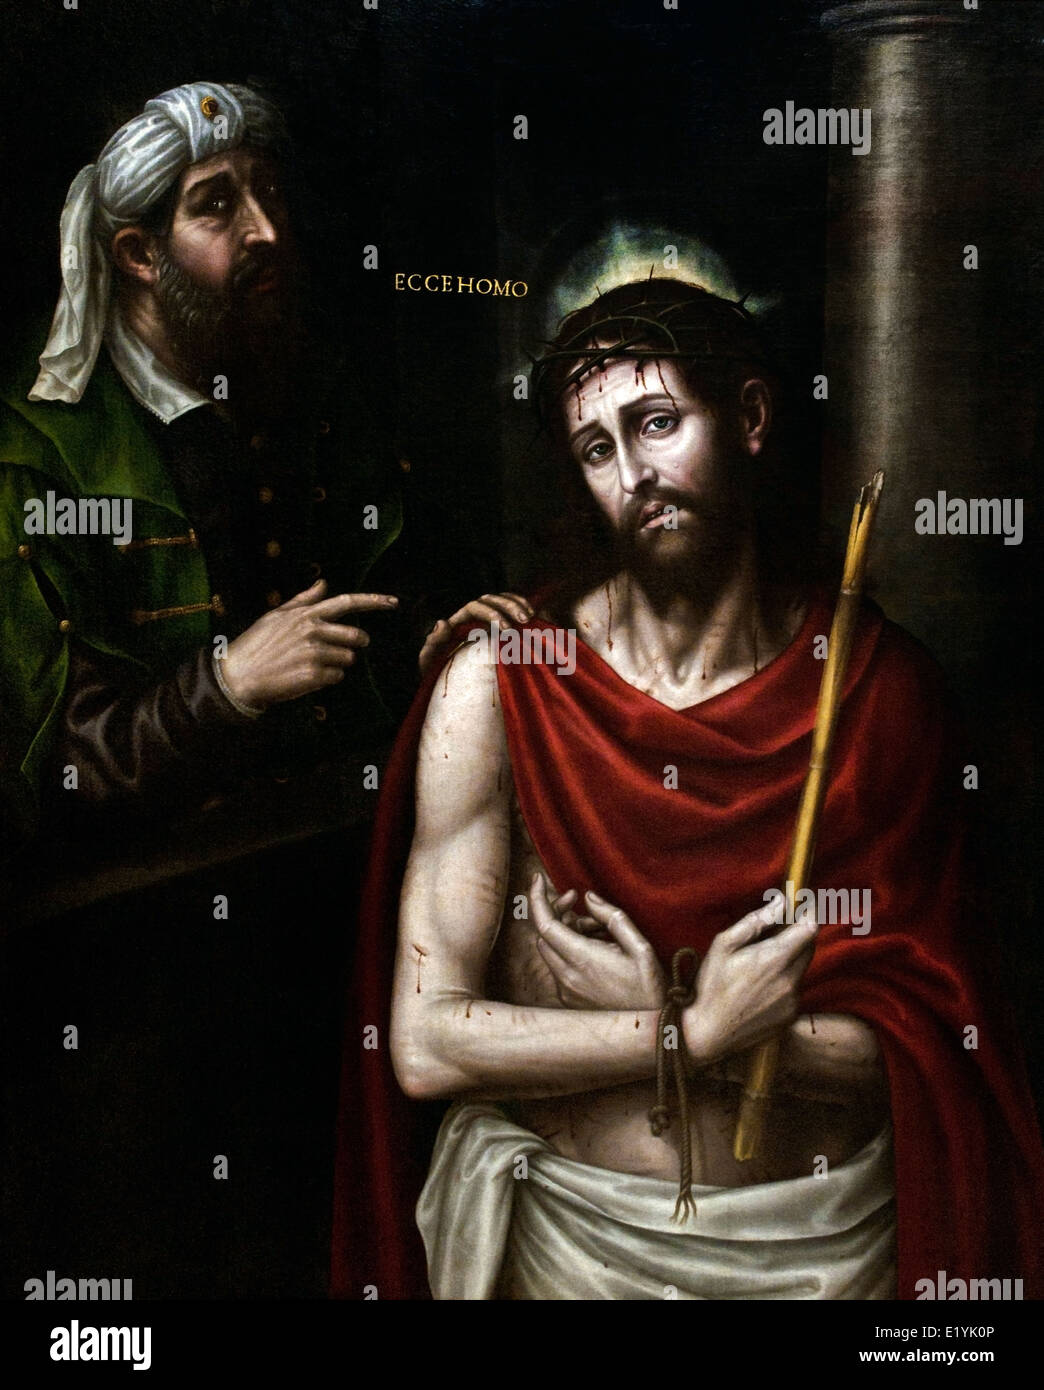 Ecce Homo avec Ponce Pilate par Nicolas Borras Falco 1530- 1610 Moyen-Âge Espagne Espagnol ( voici l'homme ) Banque D'Images